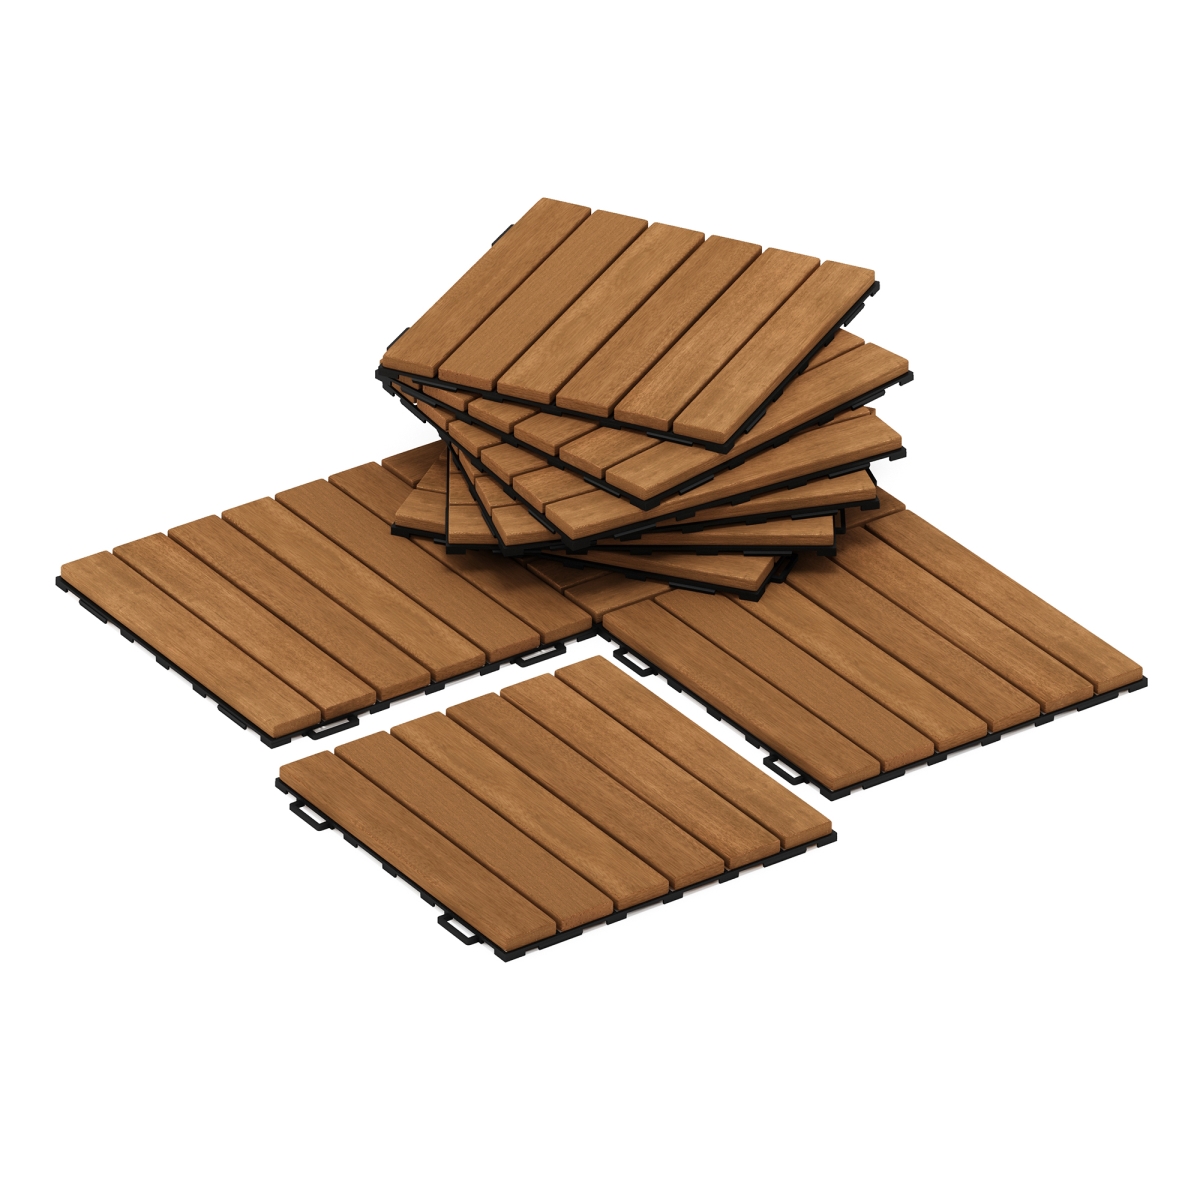 Tioman Outdoor Floor Decking Wood Tile Interlock, Honey Oak - 10 Piece